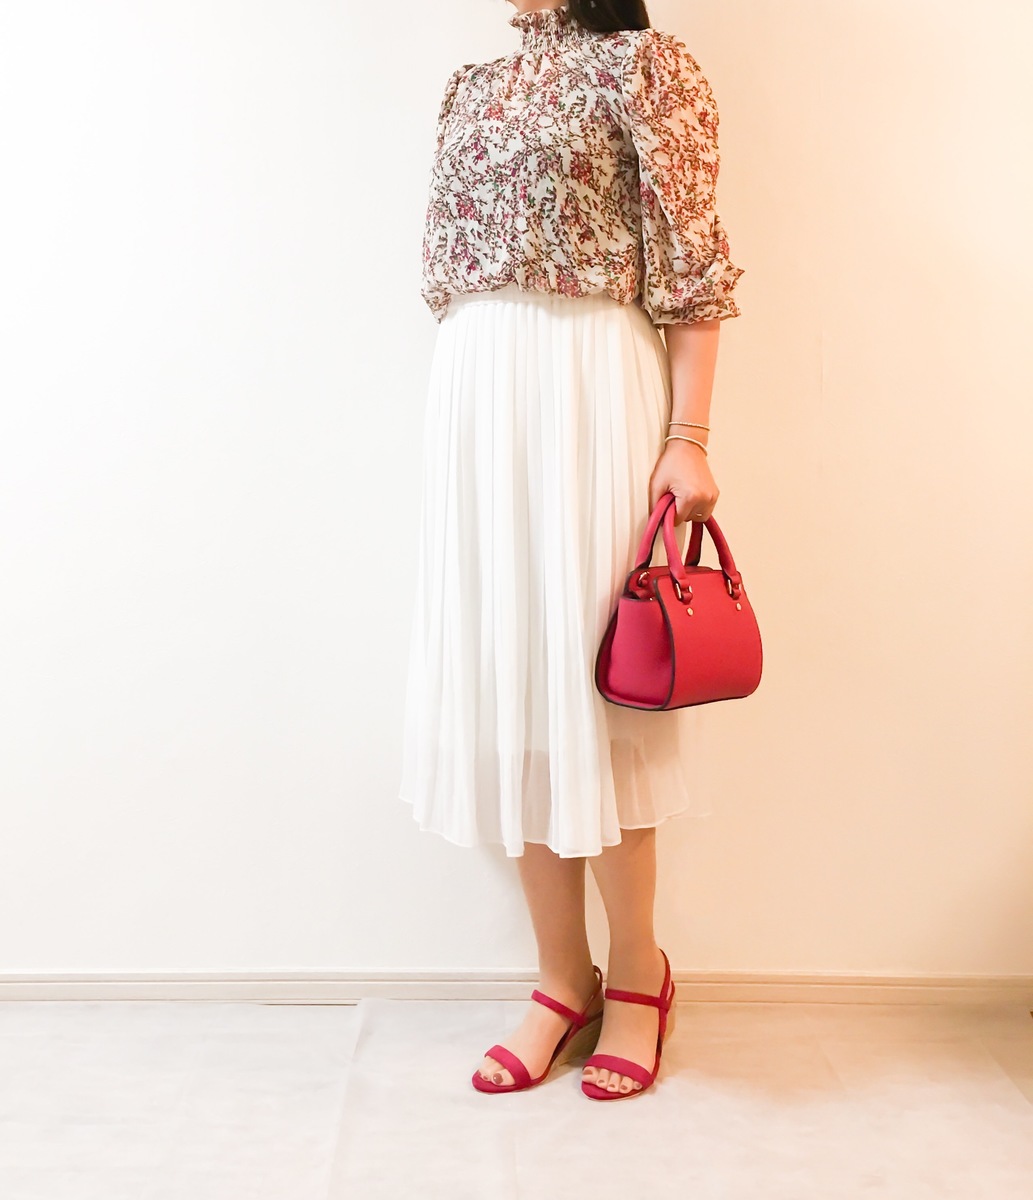 UNIQLOのシフォンプリーツスカートが優秀。白×赤のきれいめ夏コーデに